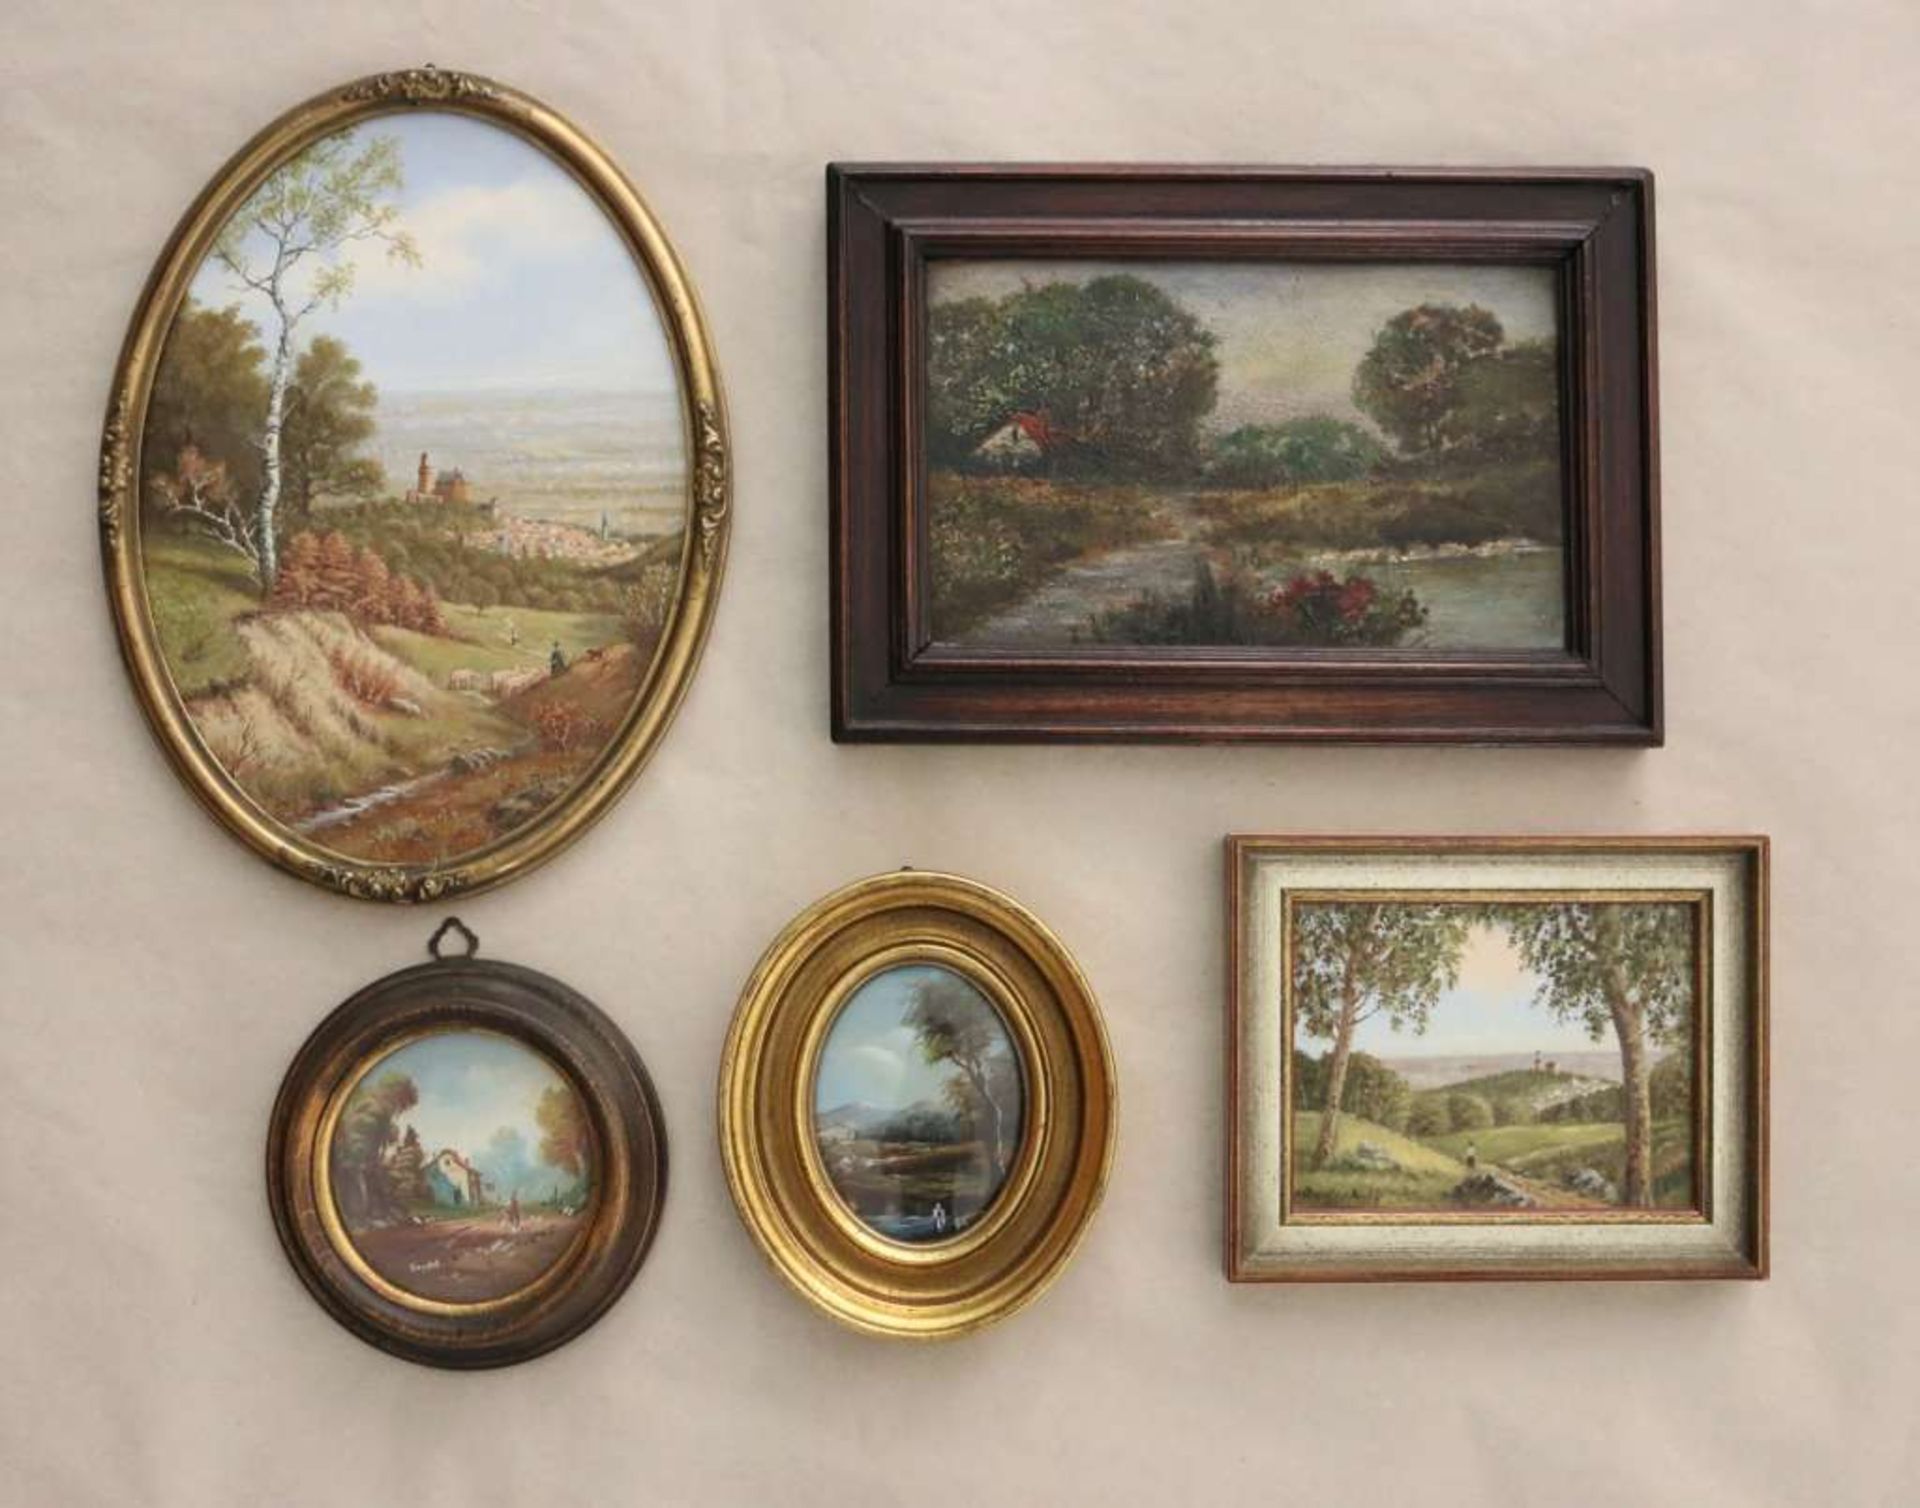 Fünf kleine Gemälde, div. Landschaftsdarstellungen, darunter zwei von Hans Raufenbarth mit der